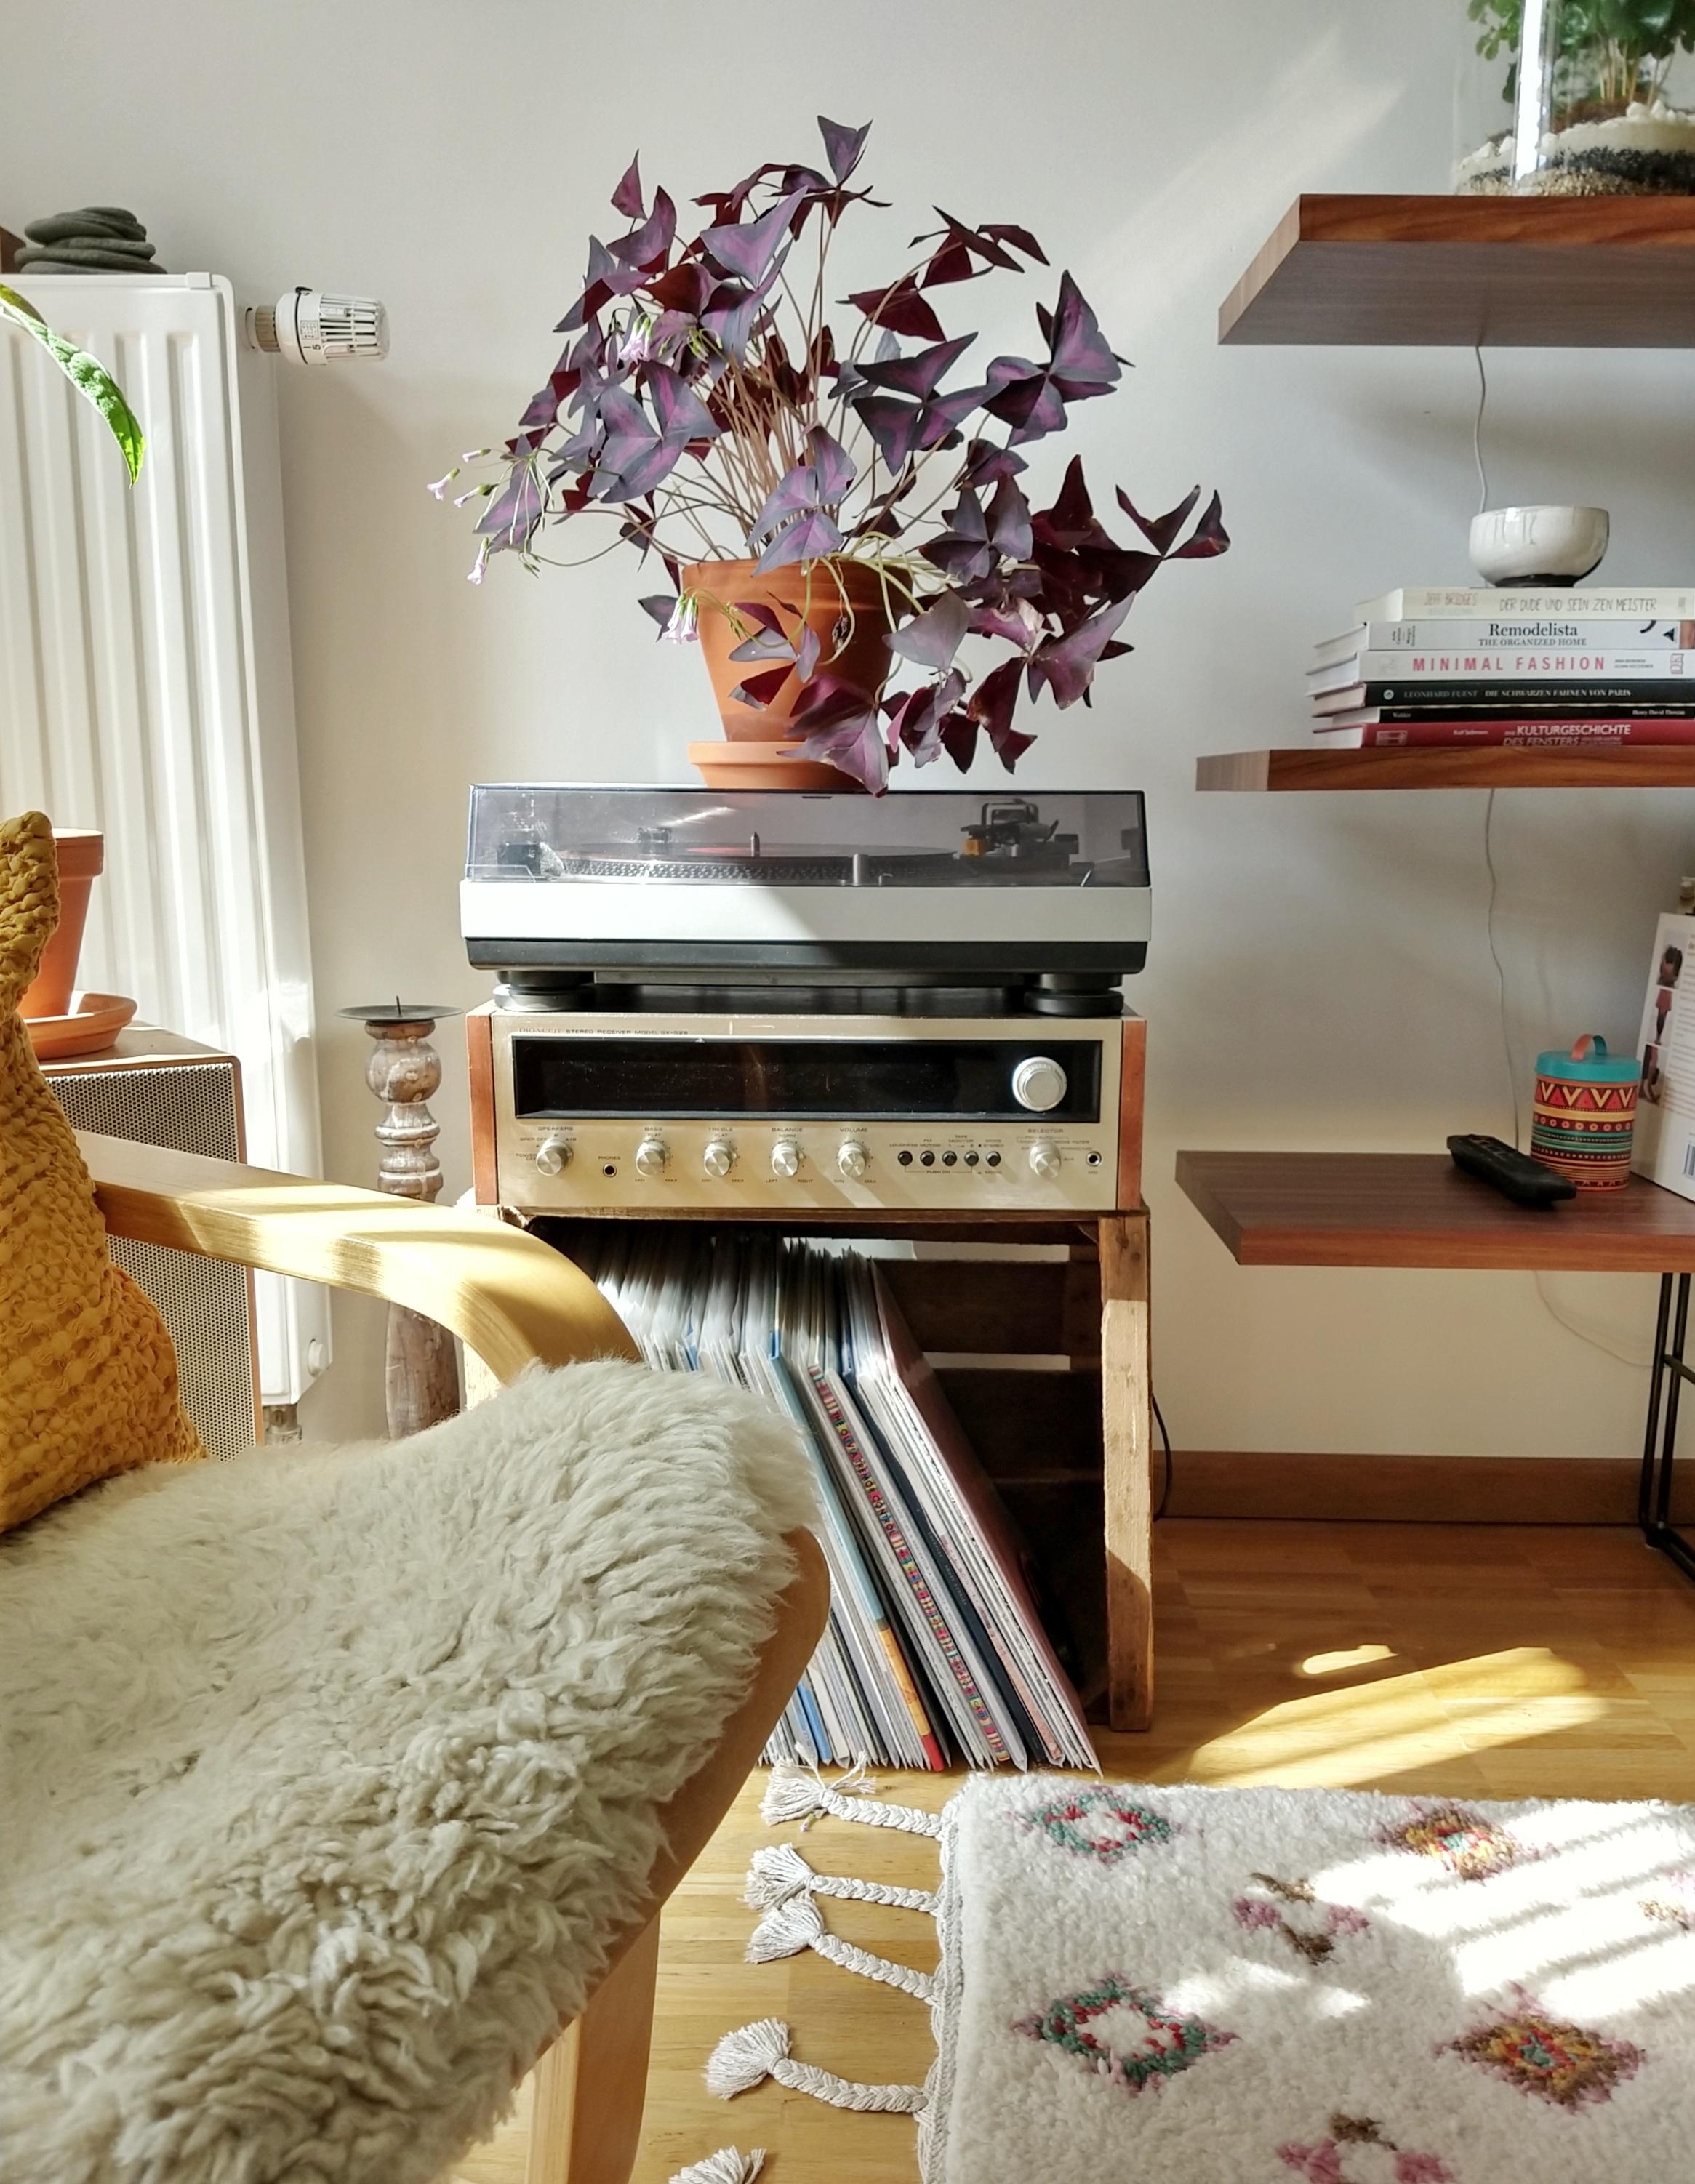 Am Wochenende endlich den neuen, alten Receiver angeschlossen - passt super rein und klingt herrlich! #vinyl #wohnzimmer